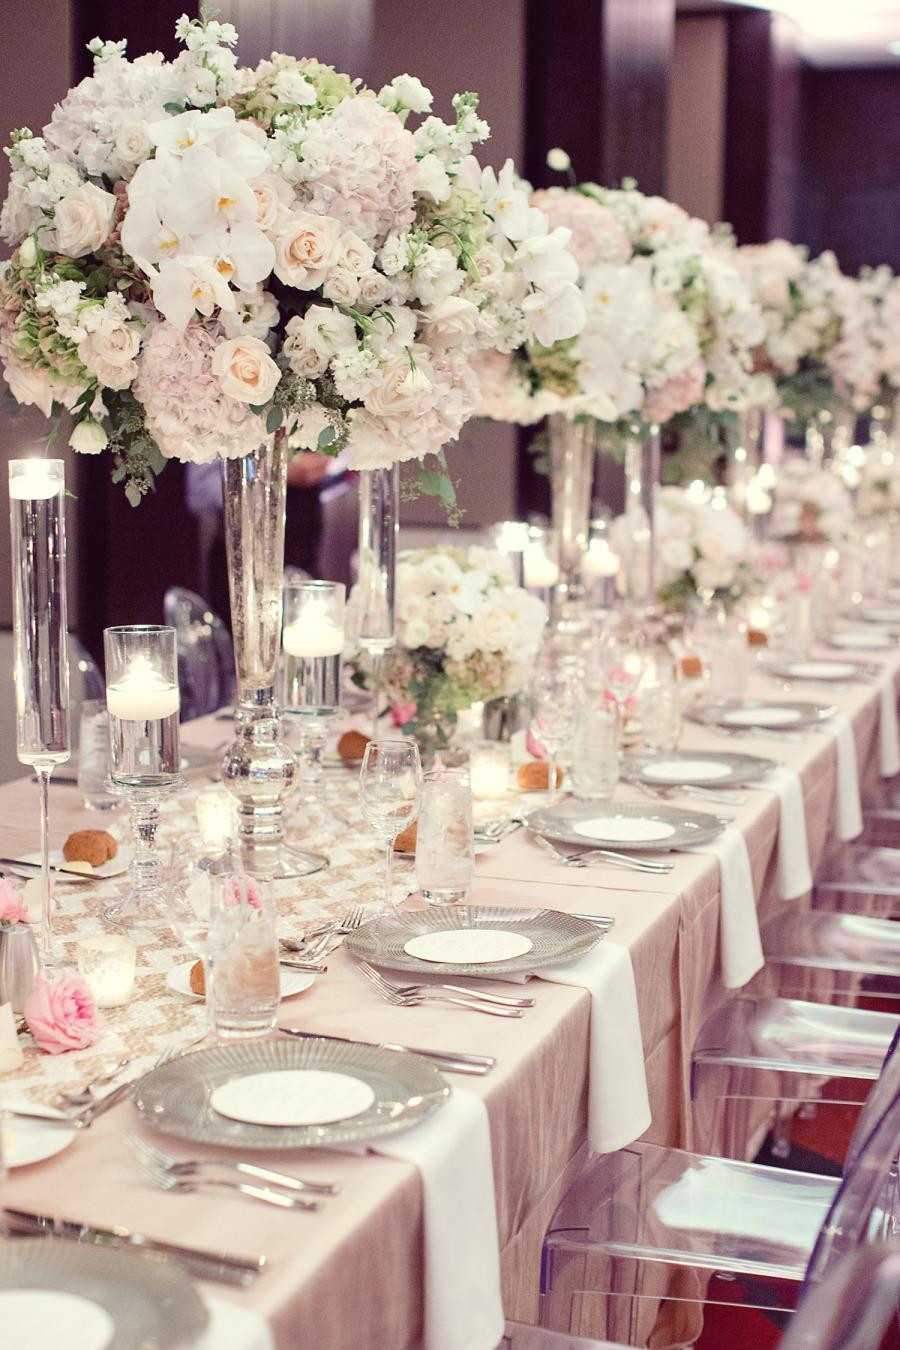 Elegant Wedding Table Decorations
 The Prettiest Wedding Flower Ideas From 2013 Weddbook